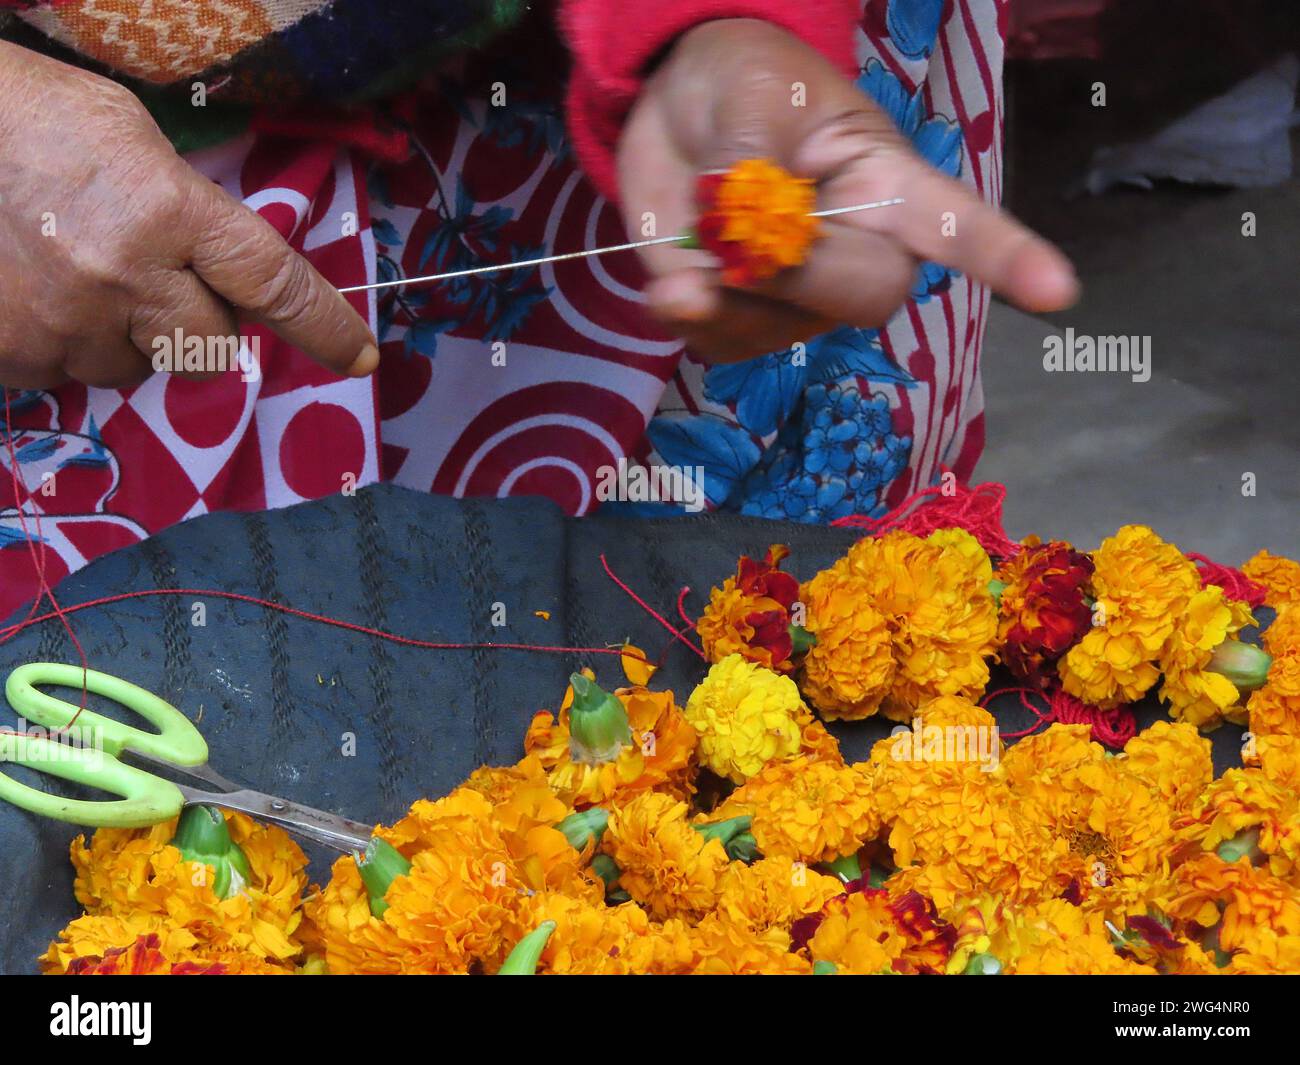 Ein Action-Nahaufnahme-Bild einer Frau, die Ringelblumen auf eine Nadel für eine Girlande oder einen traditionellen hinduistischen Willkommenskranz oder lei fädelt. Stockfoto